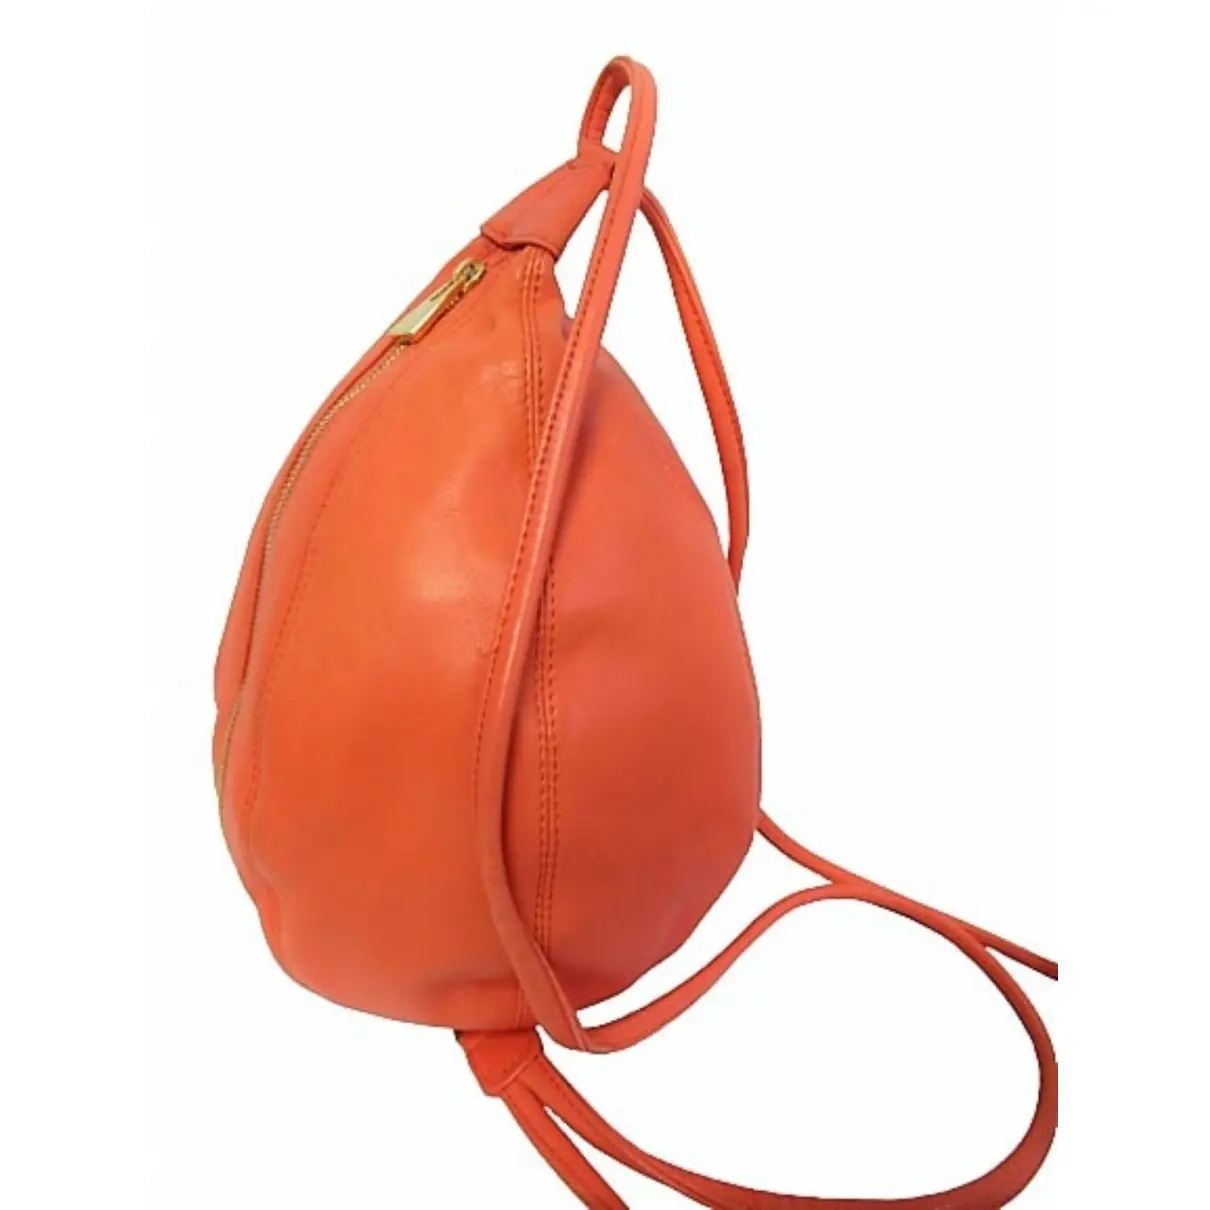 Leather backpack Celine - Vintage